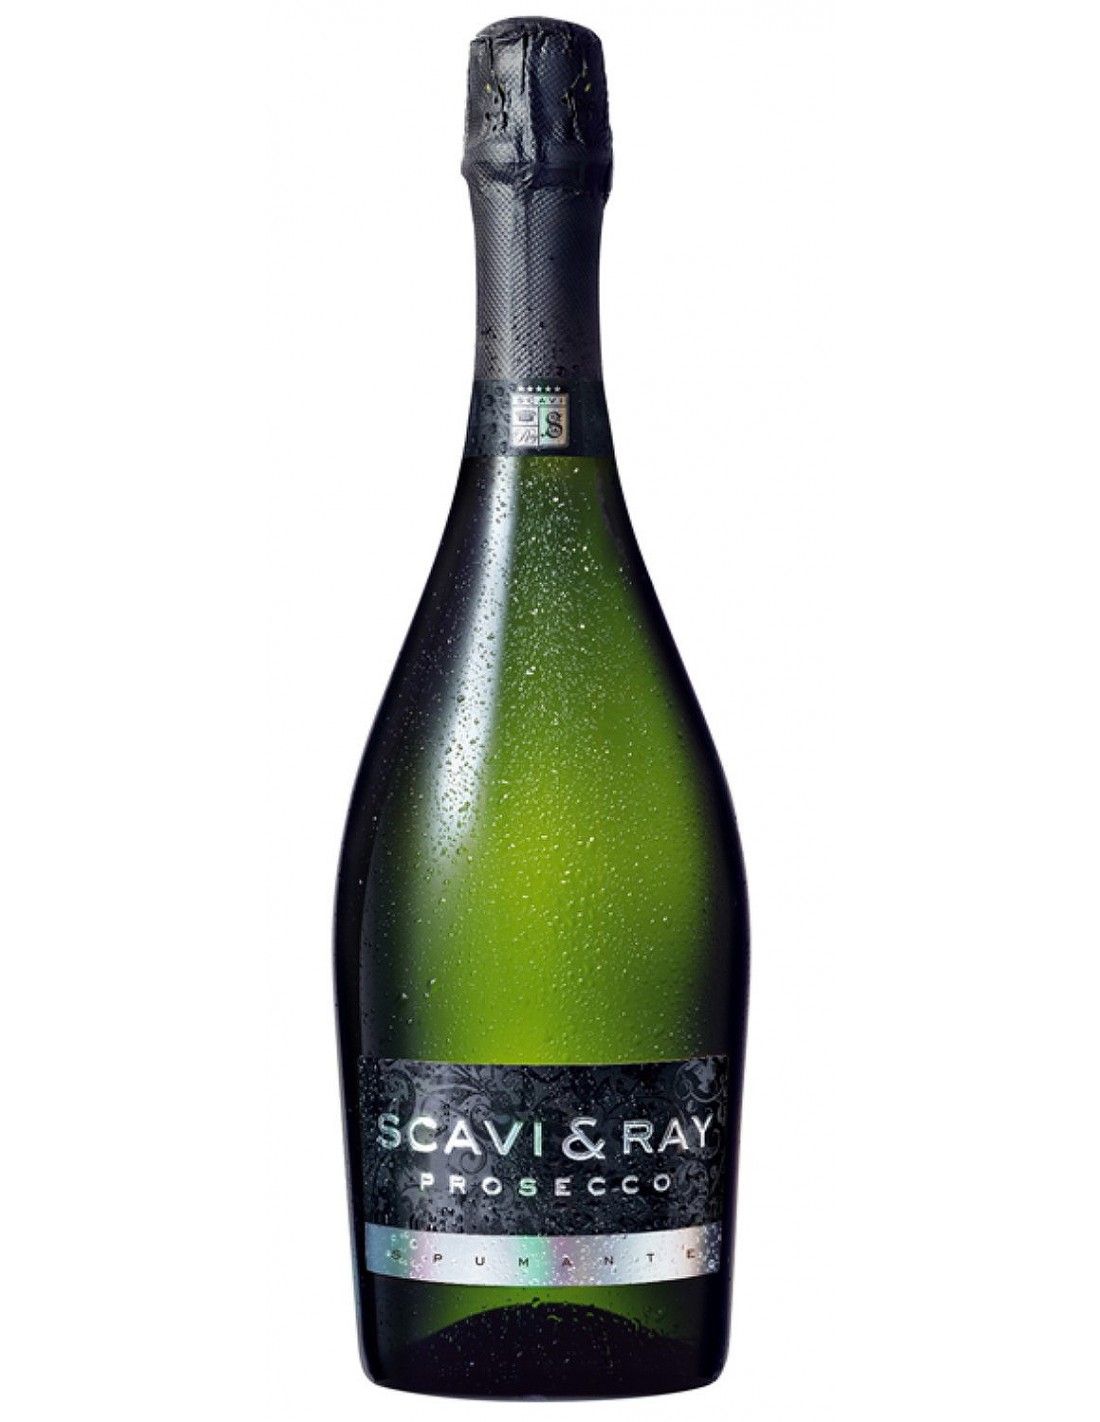 Vin Scavi & Ray Prosecco Extra Dry, 11% alc., 0.75L